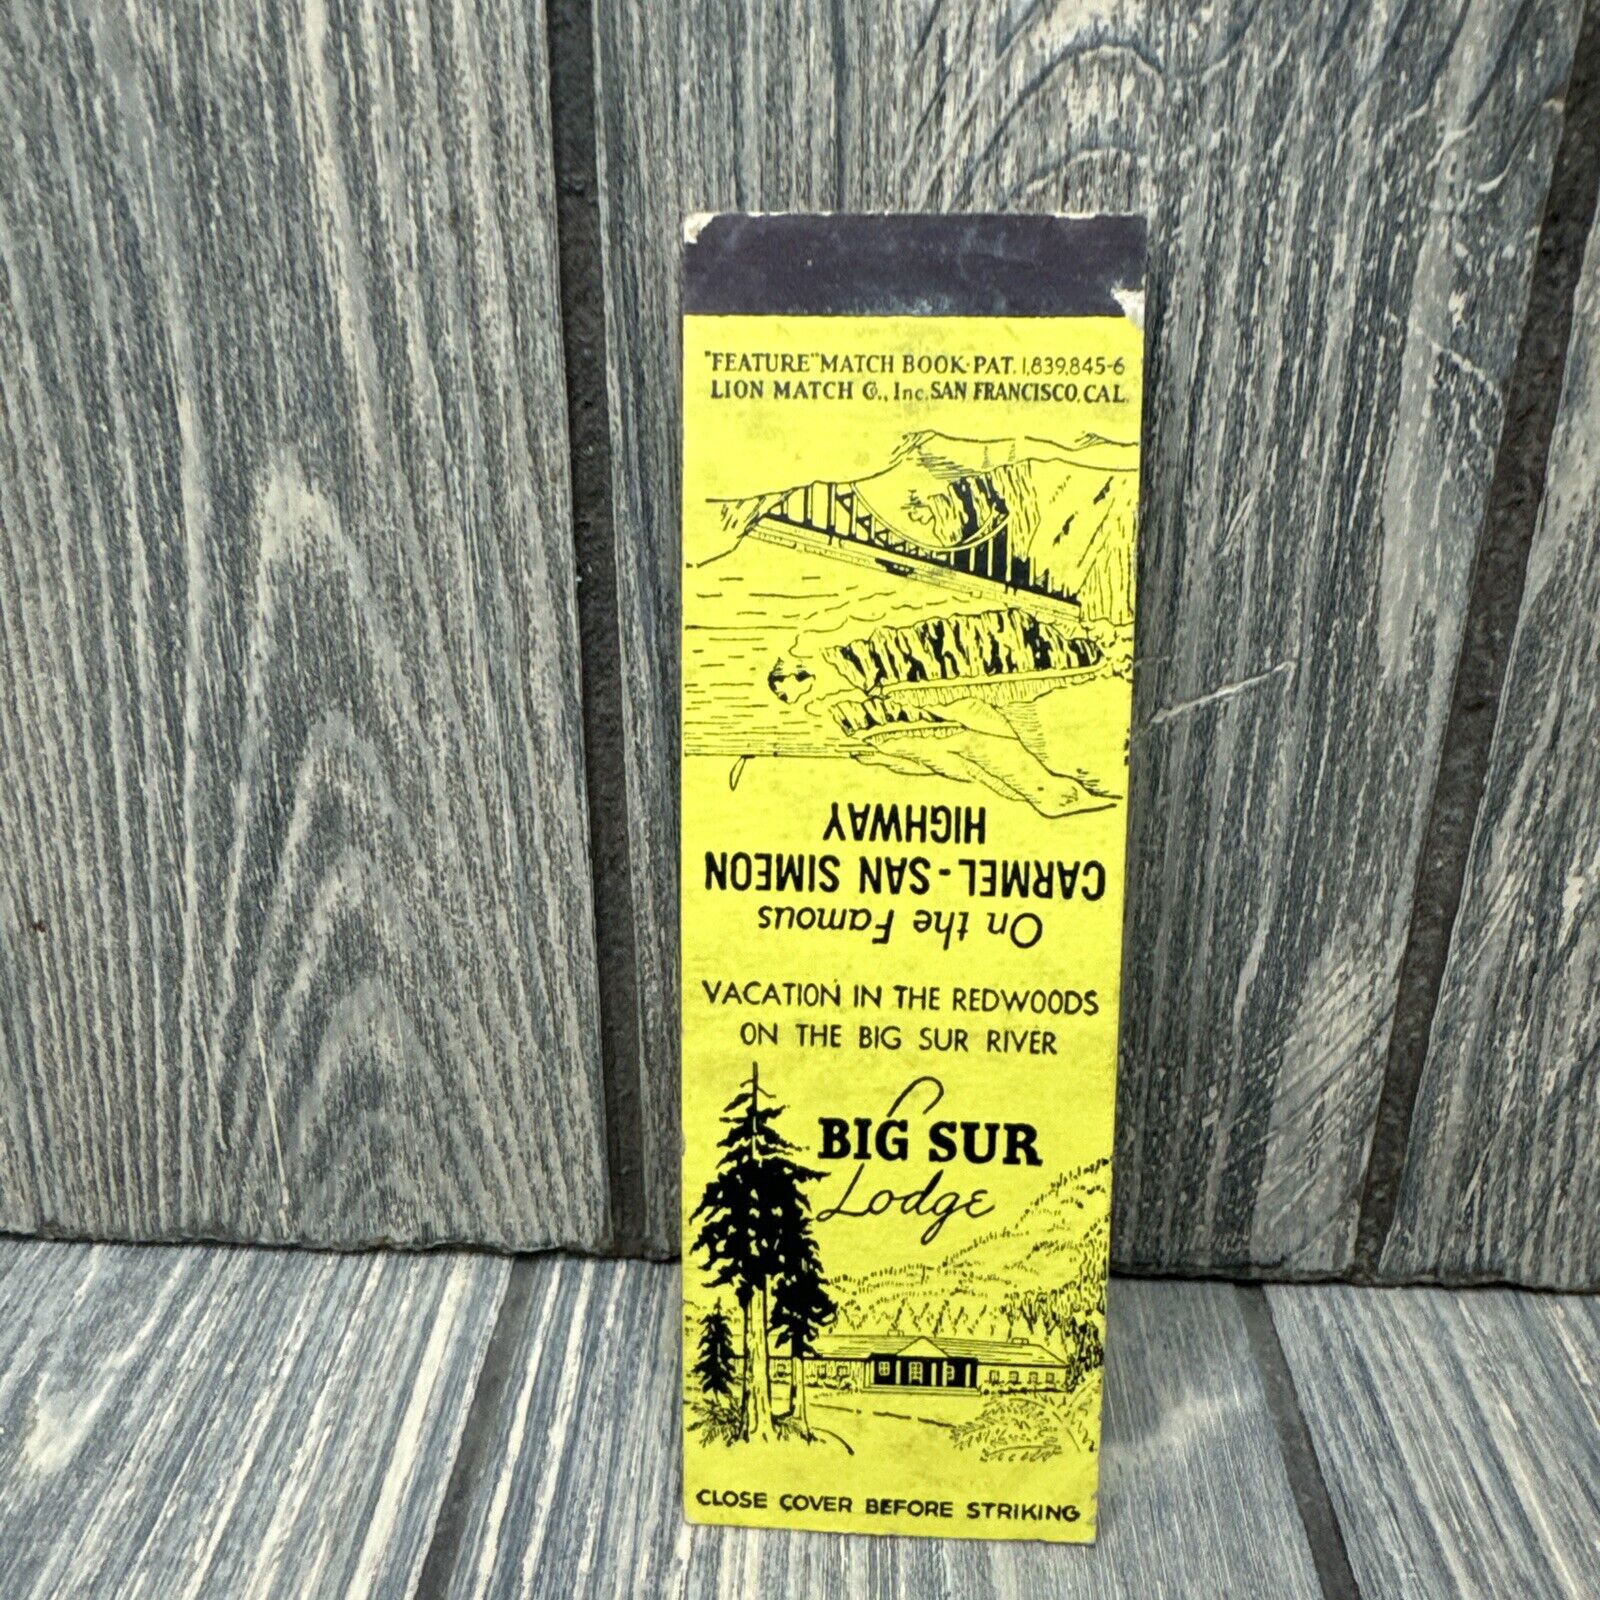 Vtg Big Sur Lodge Redwoods Matchbook Cover Advertisement